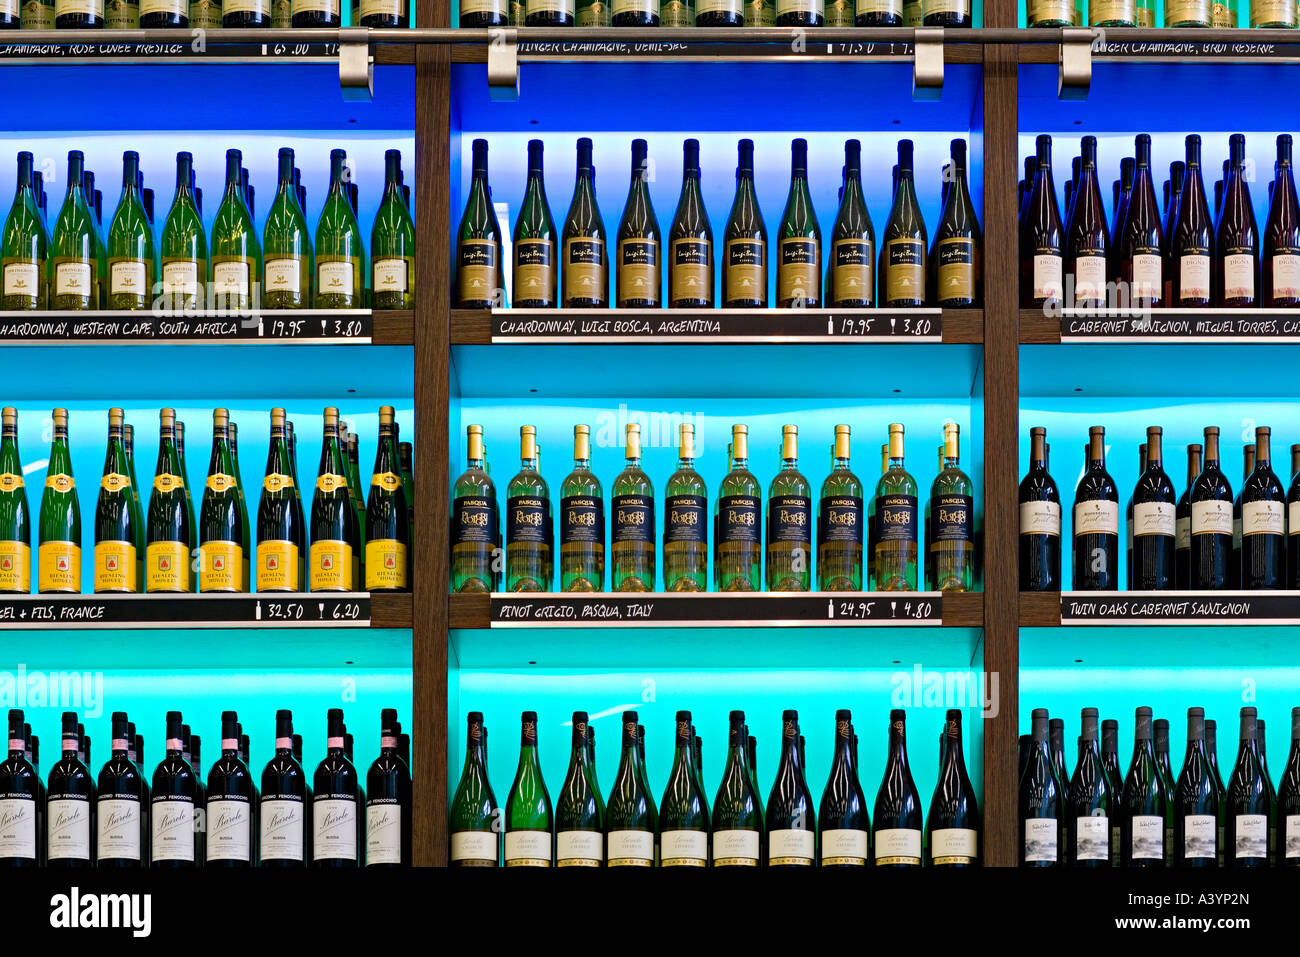 Bolle Seafood & winebar. Bottiglie di vino sul display. Aeroporto Schiphol di Amsterdam. Foto Stock